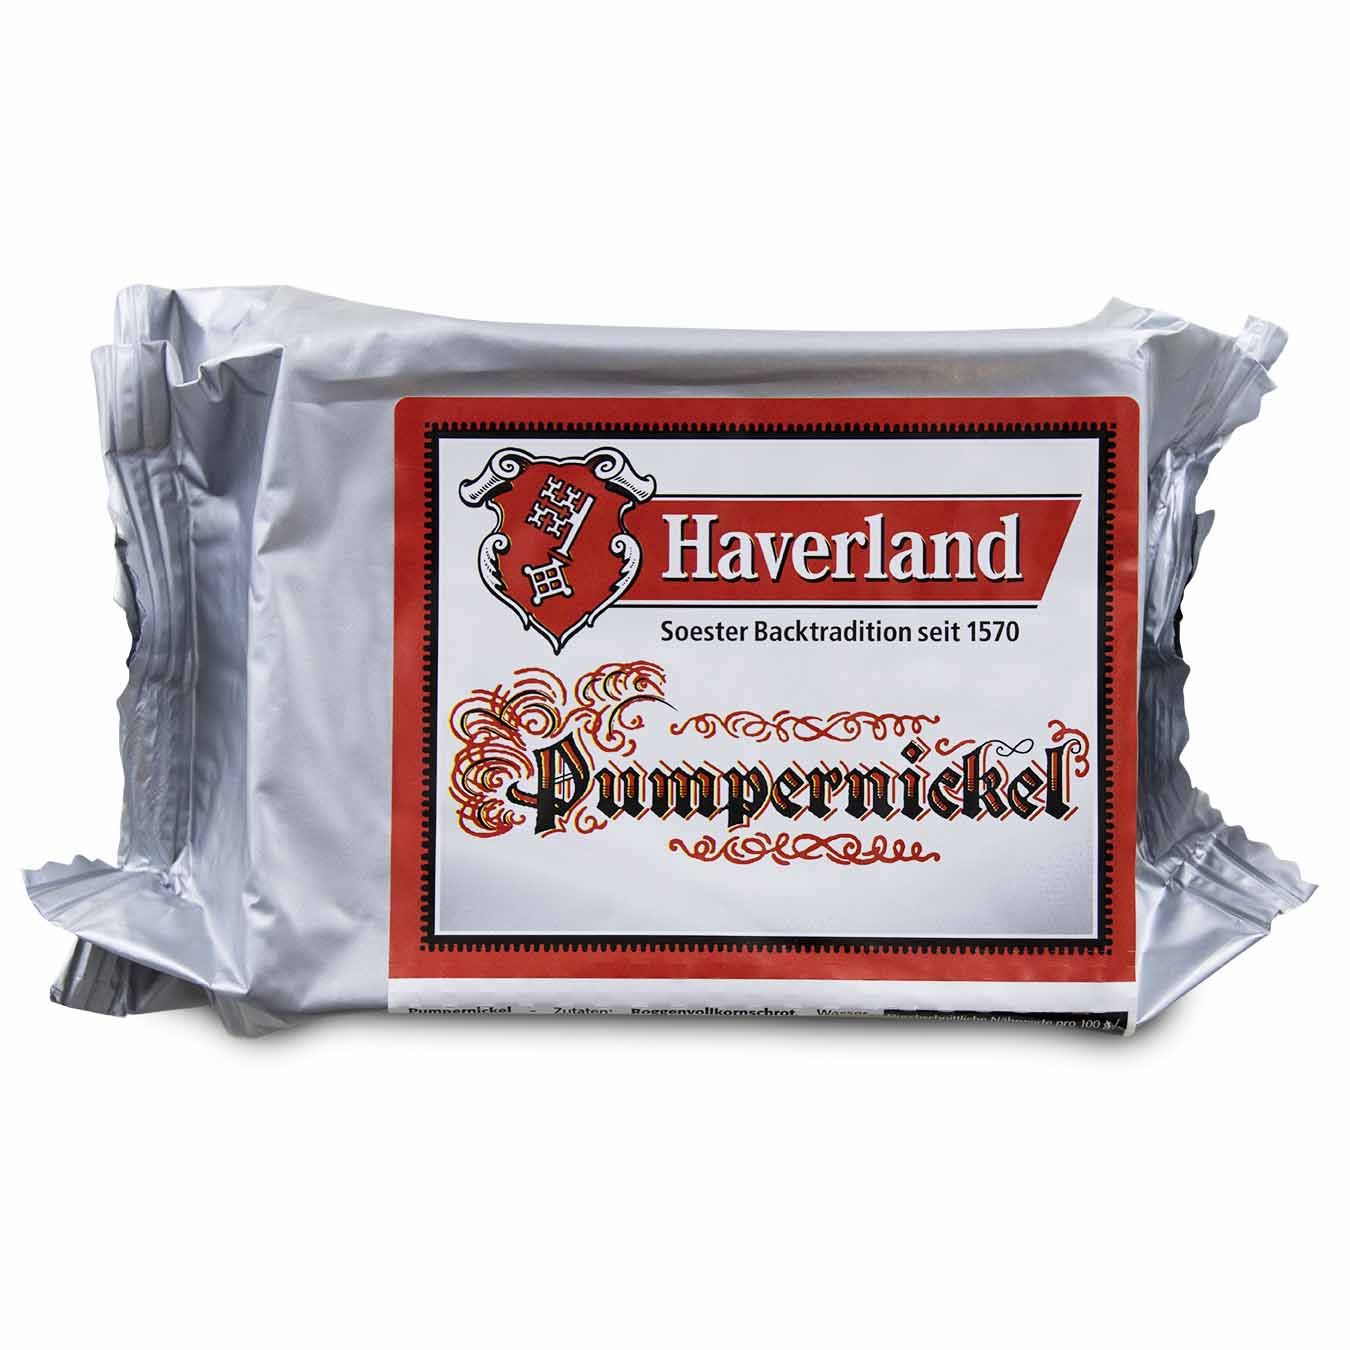 Soester Pumpernickel Brot von Haverland 500g seitlich